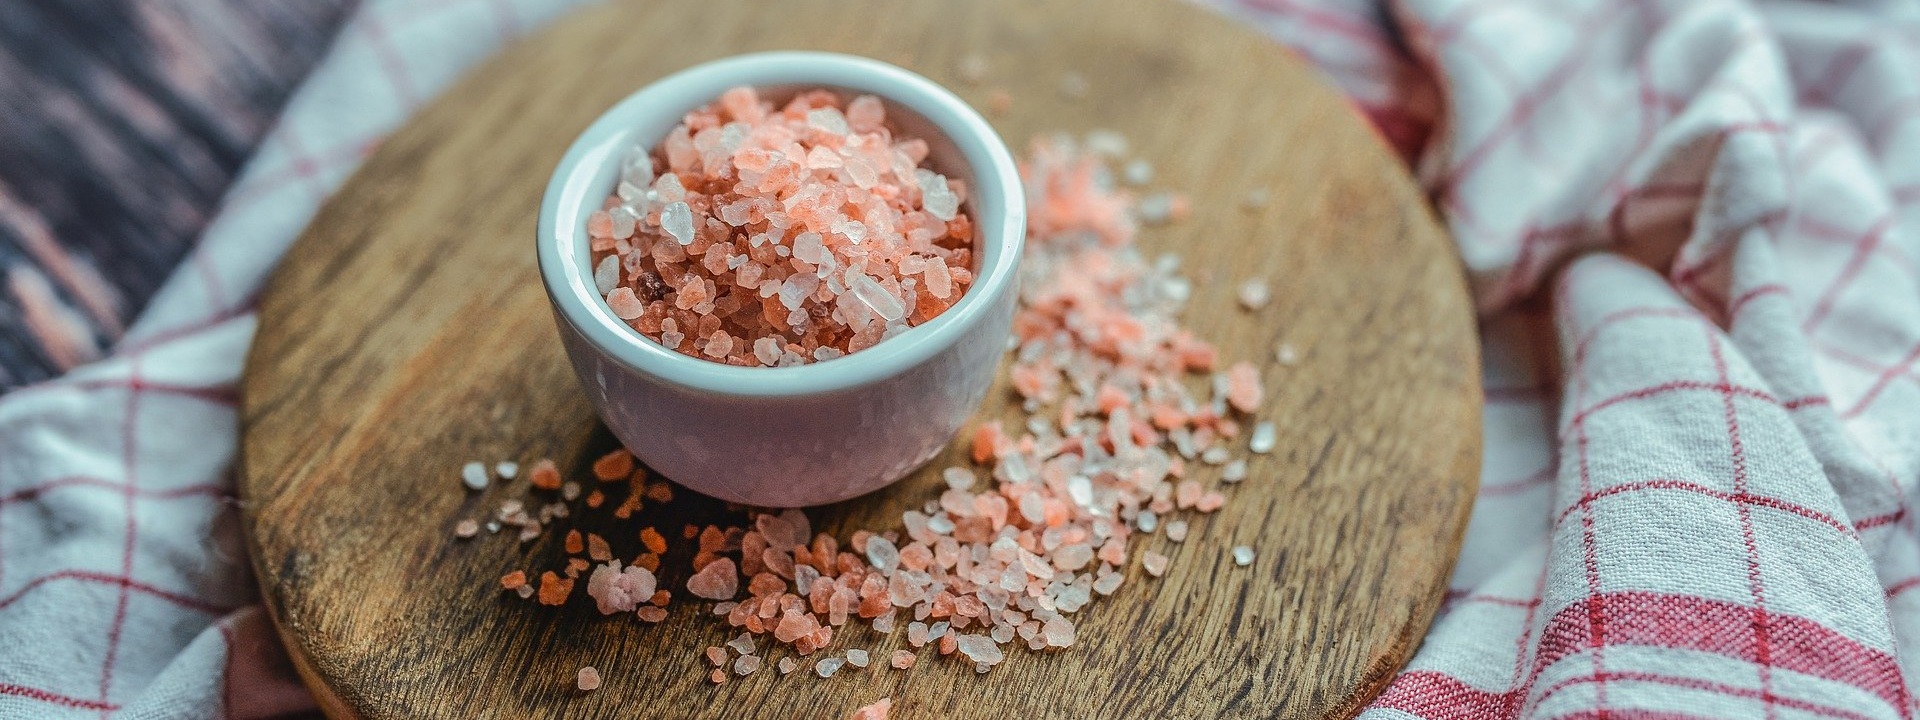 Erfahre mehr über unsere Salze